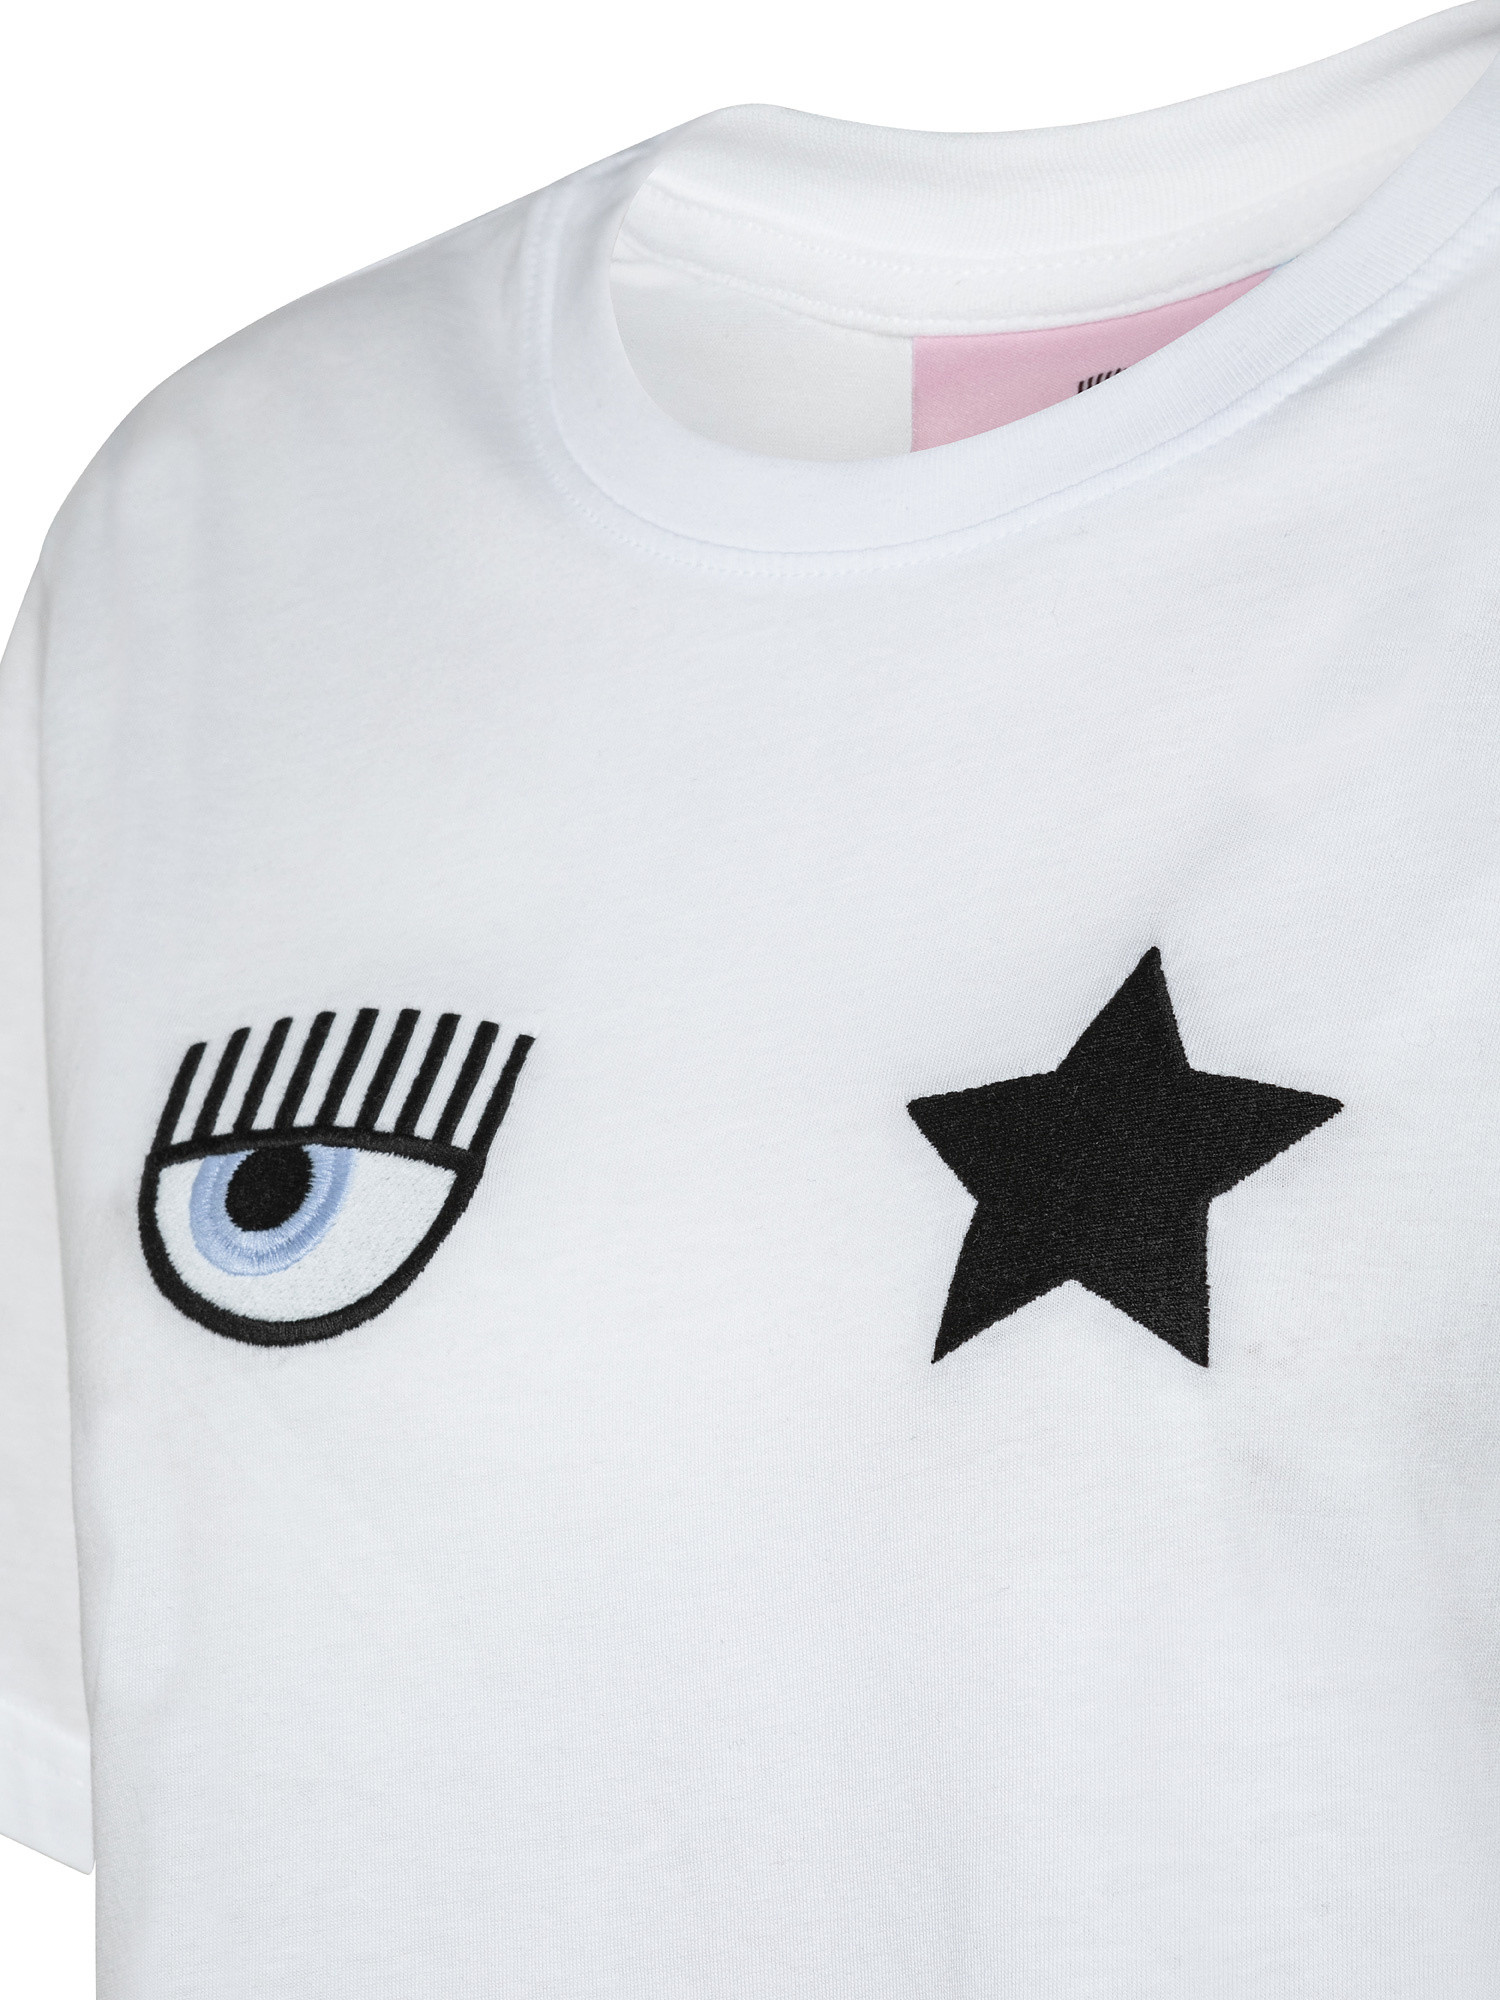 T-shirt Eye Star, Bianco, large image number 2